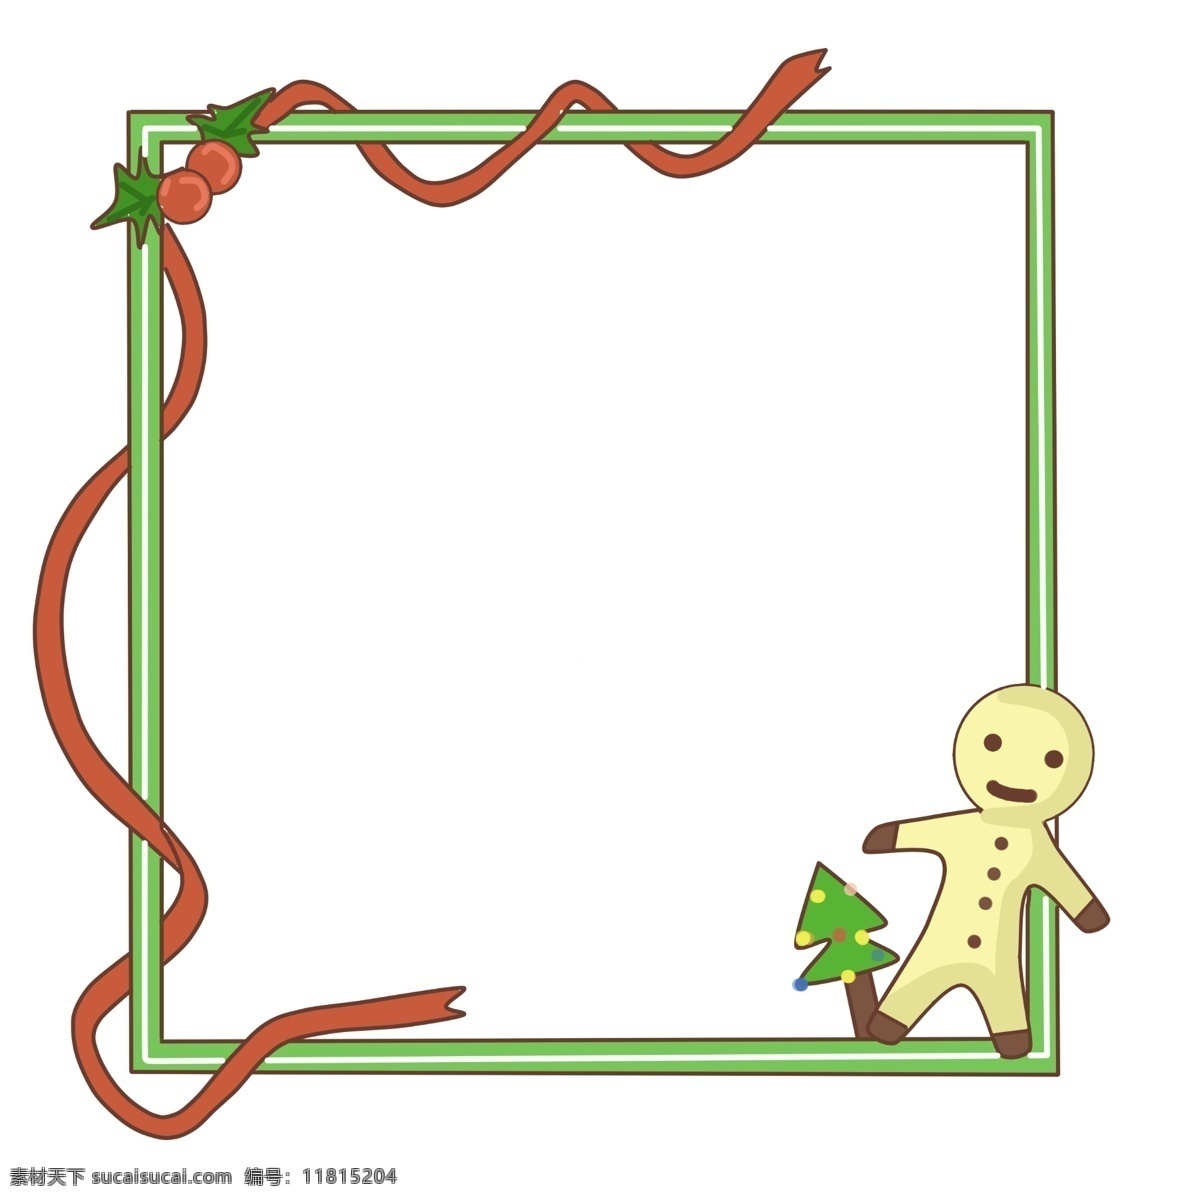 圣诞节 姜饼 边框 插画 红色的丝带 红色的圣诞球 绿色的叶子 绿色的边框 黄色的姜饼